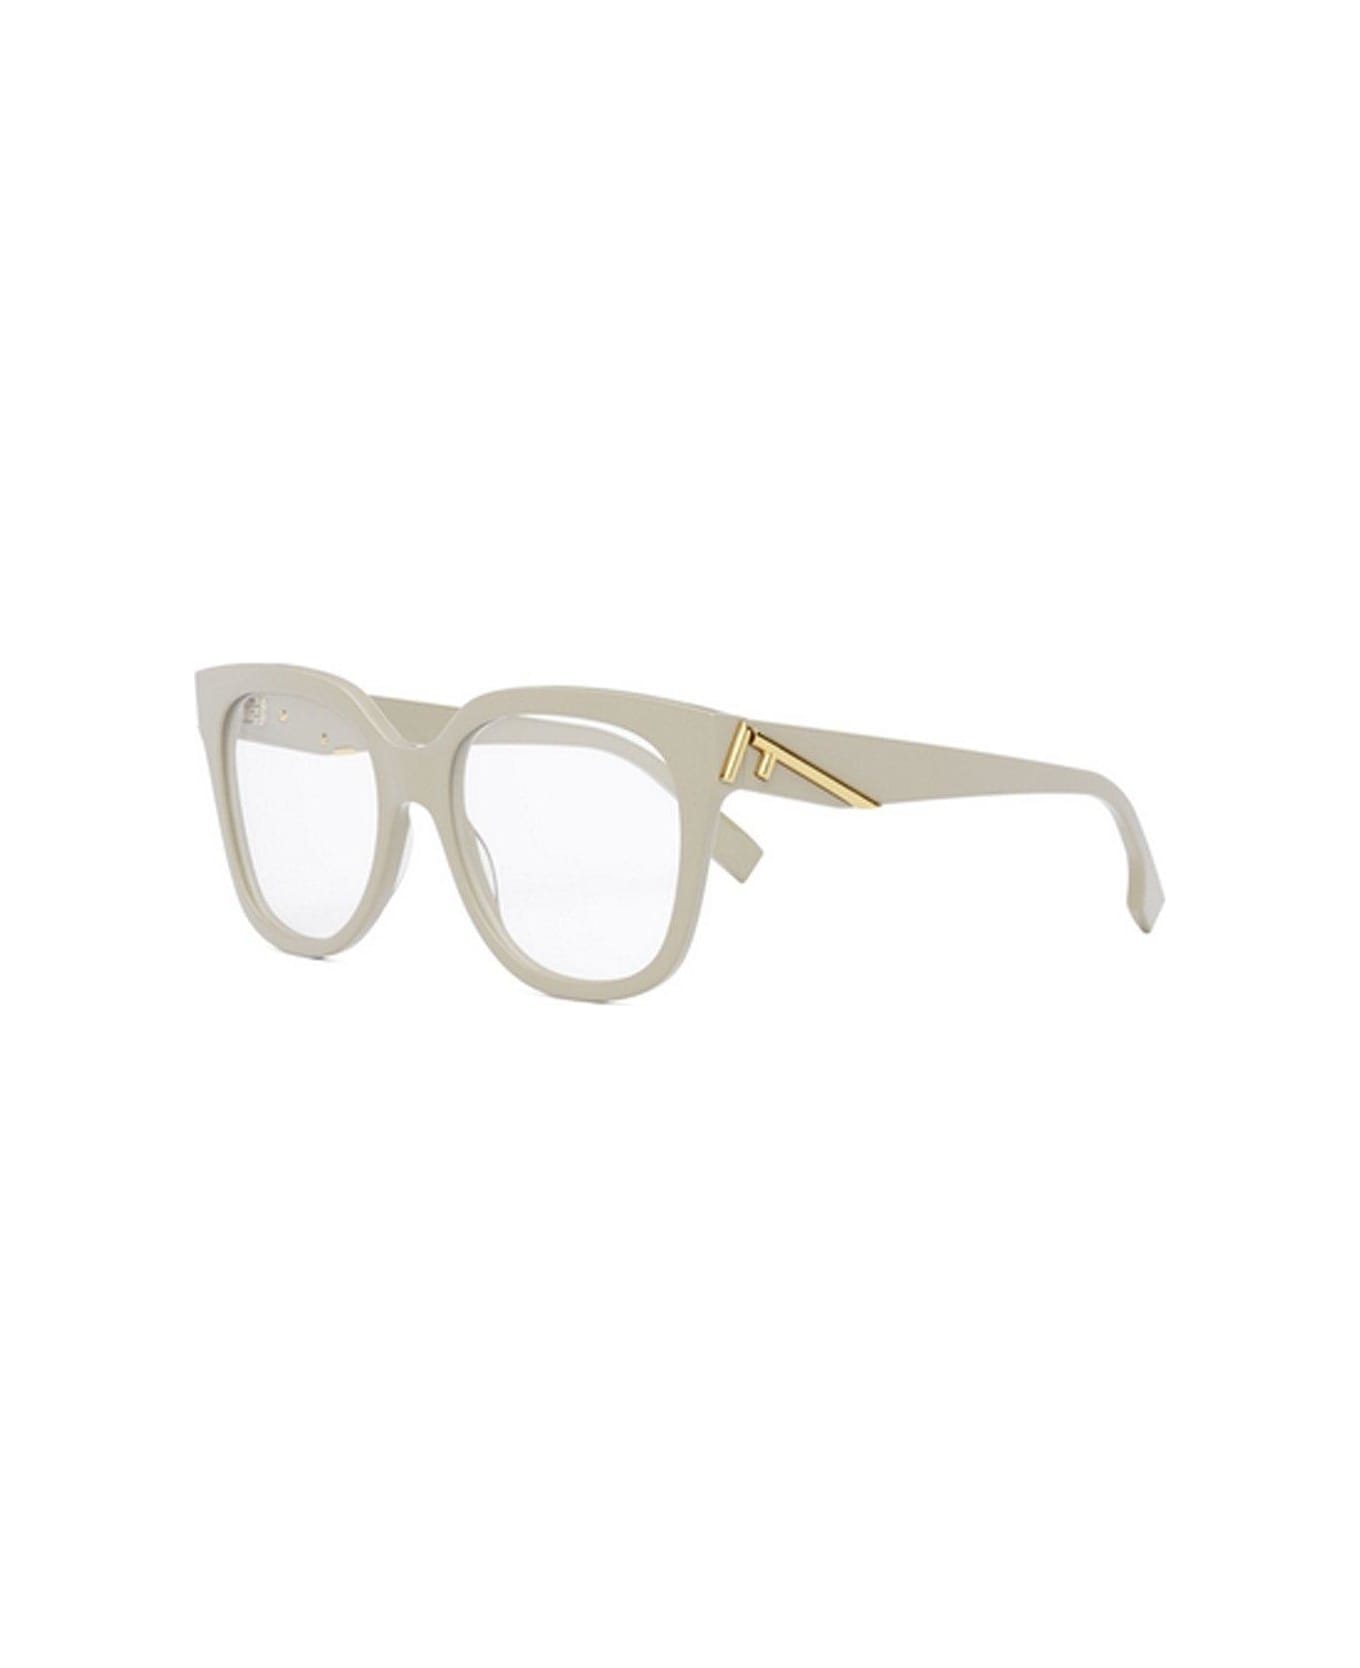 Fendi Eyewear Square-frame Glasses - 025 アイウェア